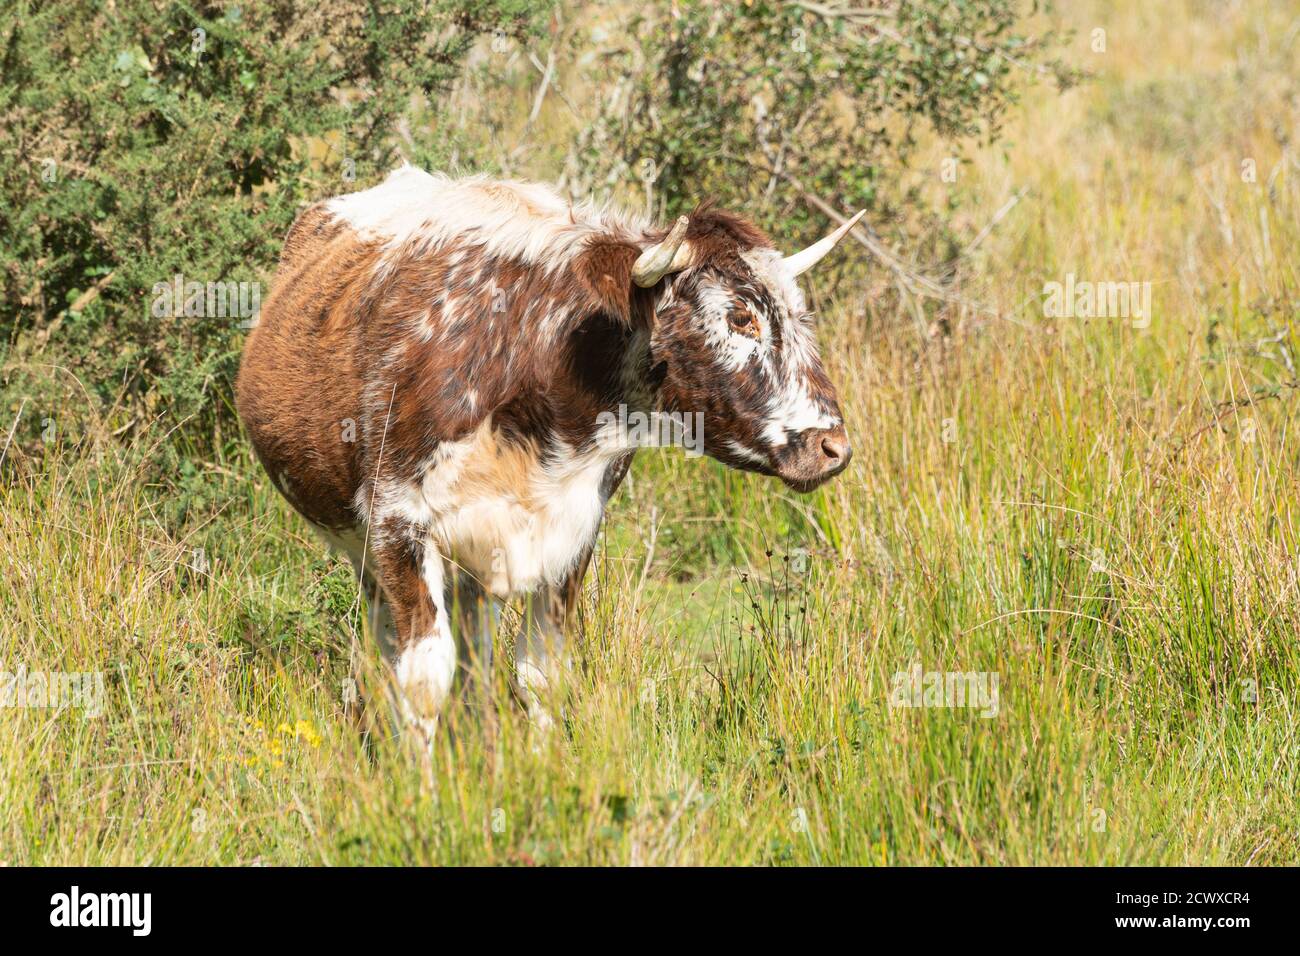 Old English longhorn bull (precedentemente chiamato Lancashire Cattle), una razza bruna e bianca, Regno Unito Foto Stock